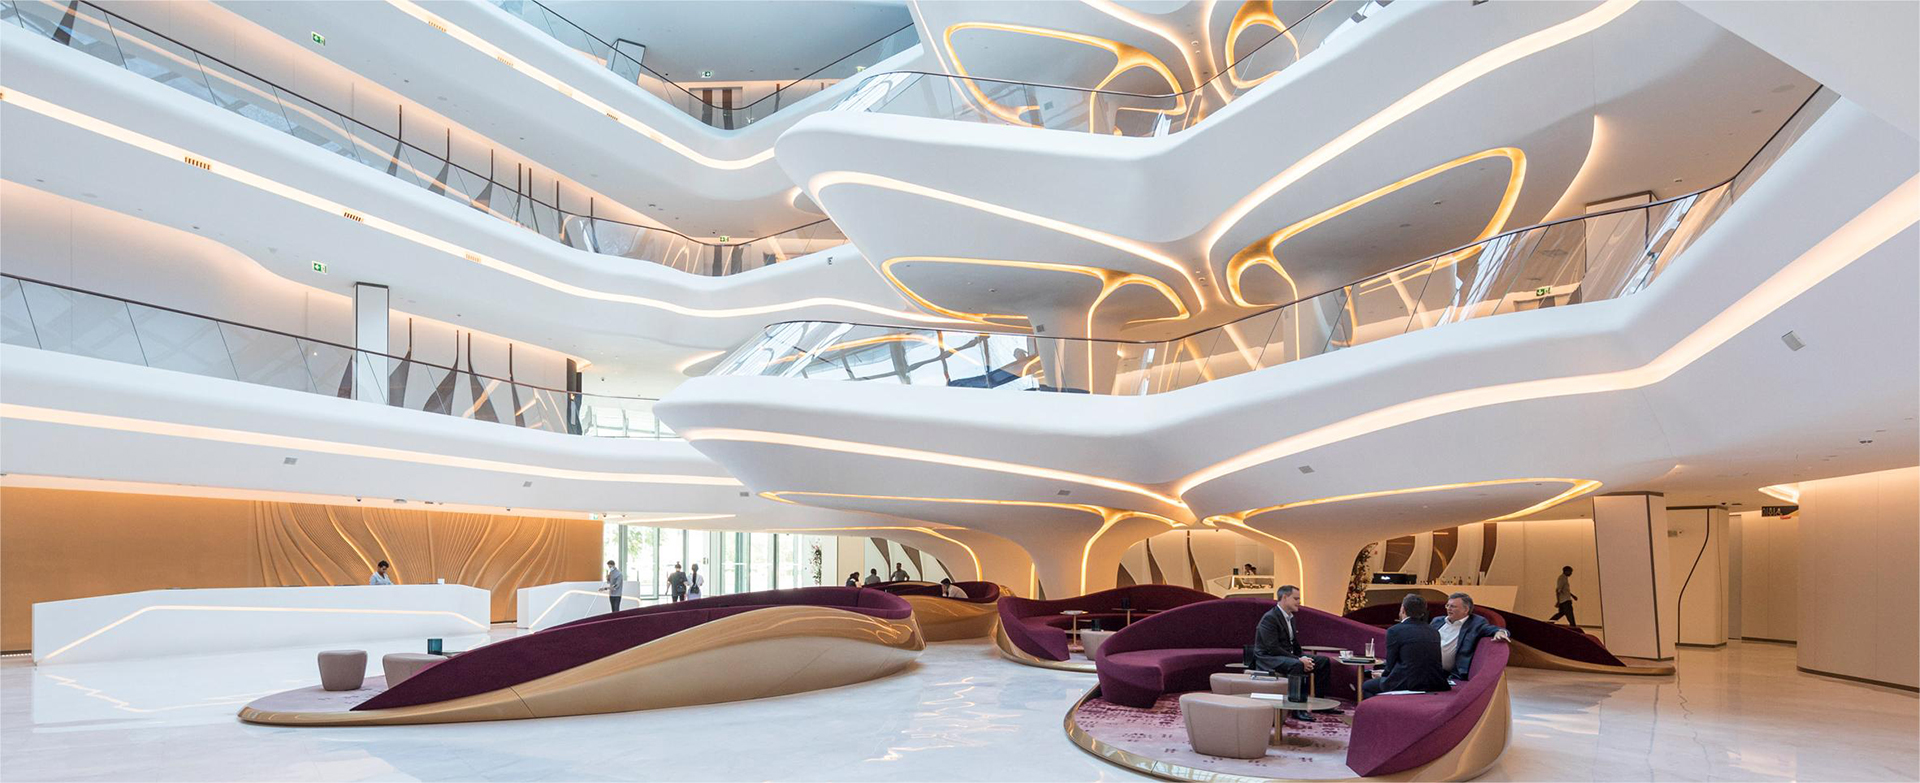 扎哈·哈迪德--迪拜Opus大厦中的ME酒店内部设计